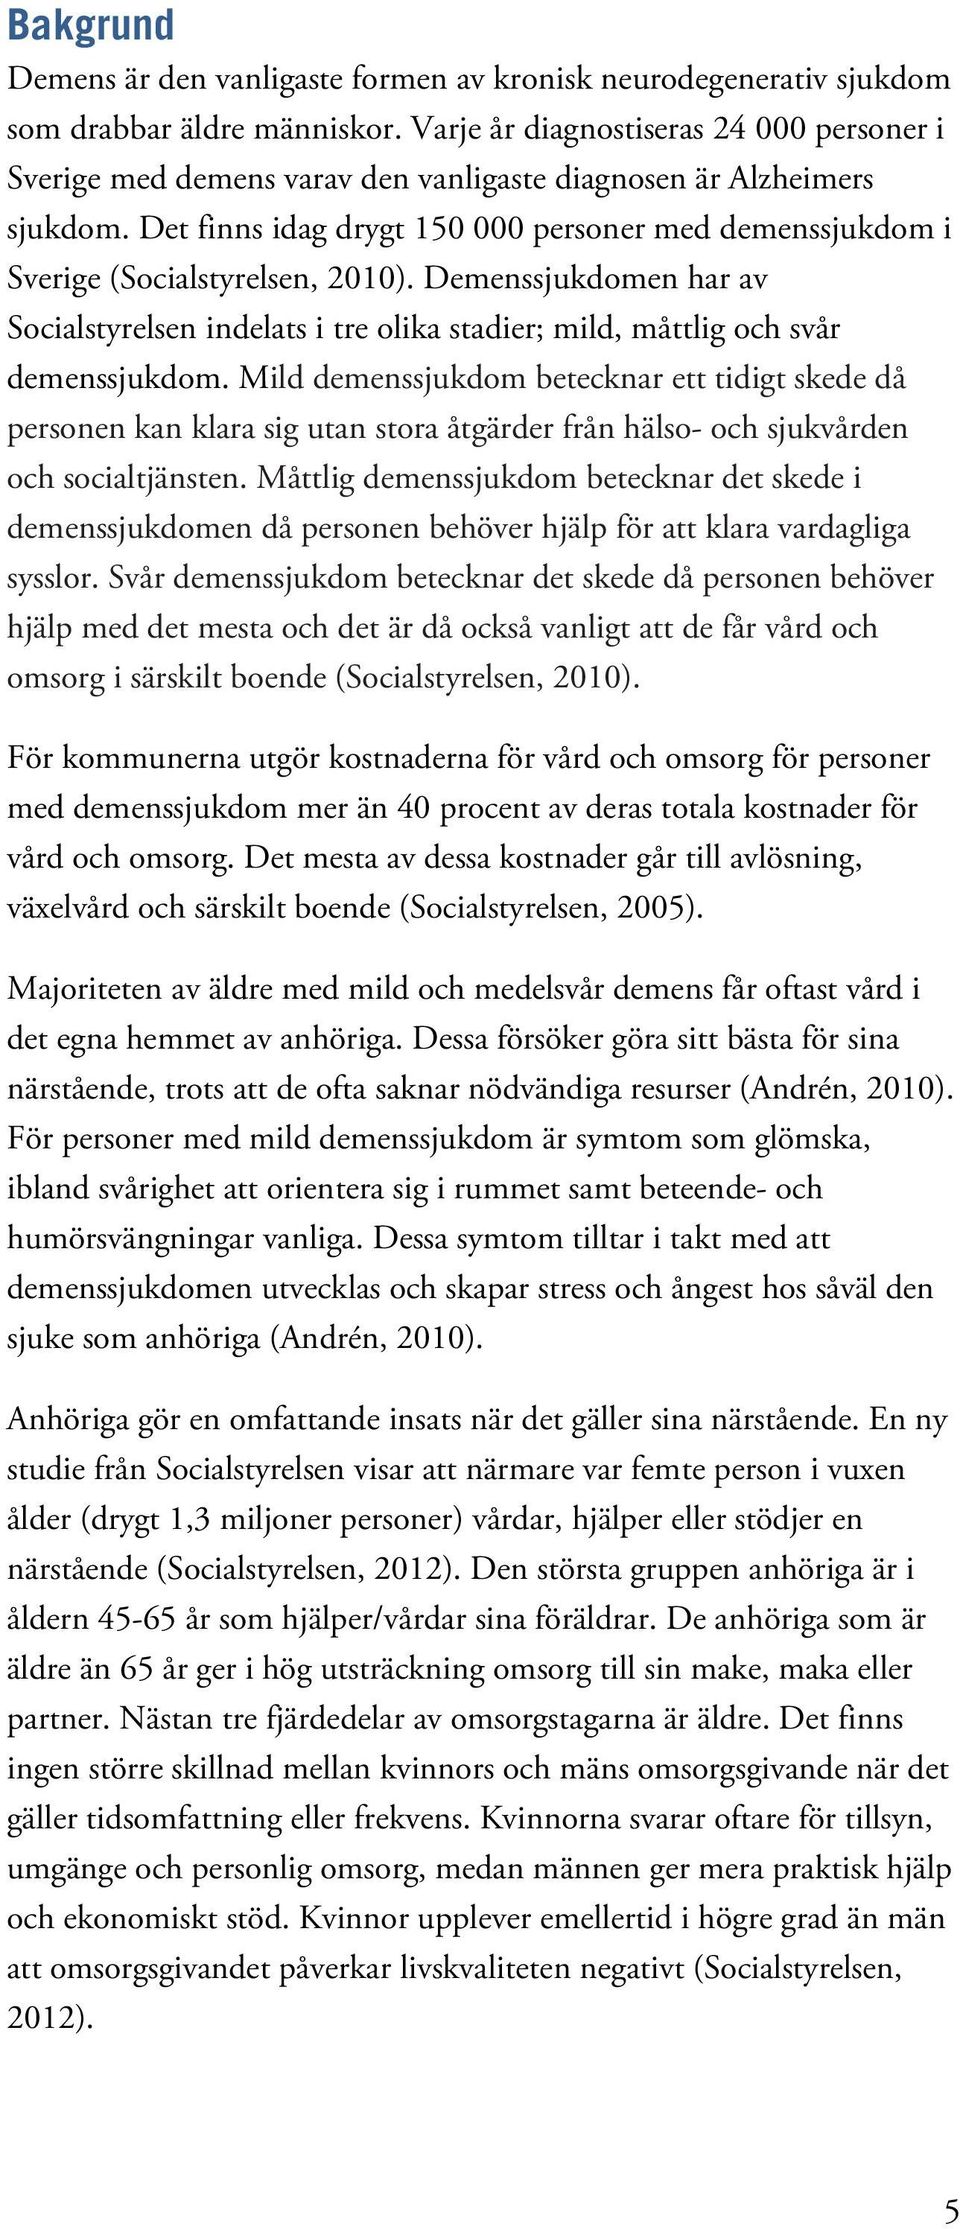 Det finns idag drygt 150 000 personer med demenssjukdom i Sverige (Socialstyrelsen, 2010). Demenssjukdomen har av Socialstyrelsen indelats i tre olika stadier; mild, måttlig och svår demenssjukdom.